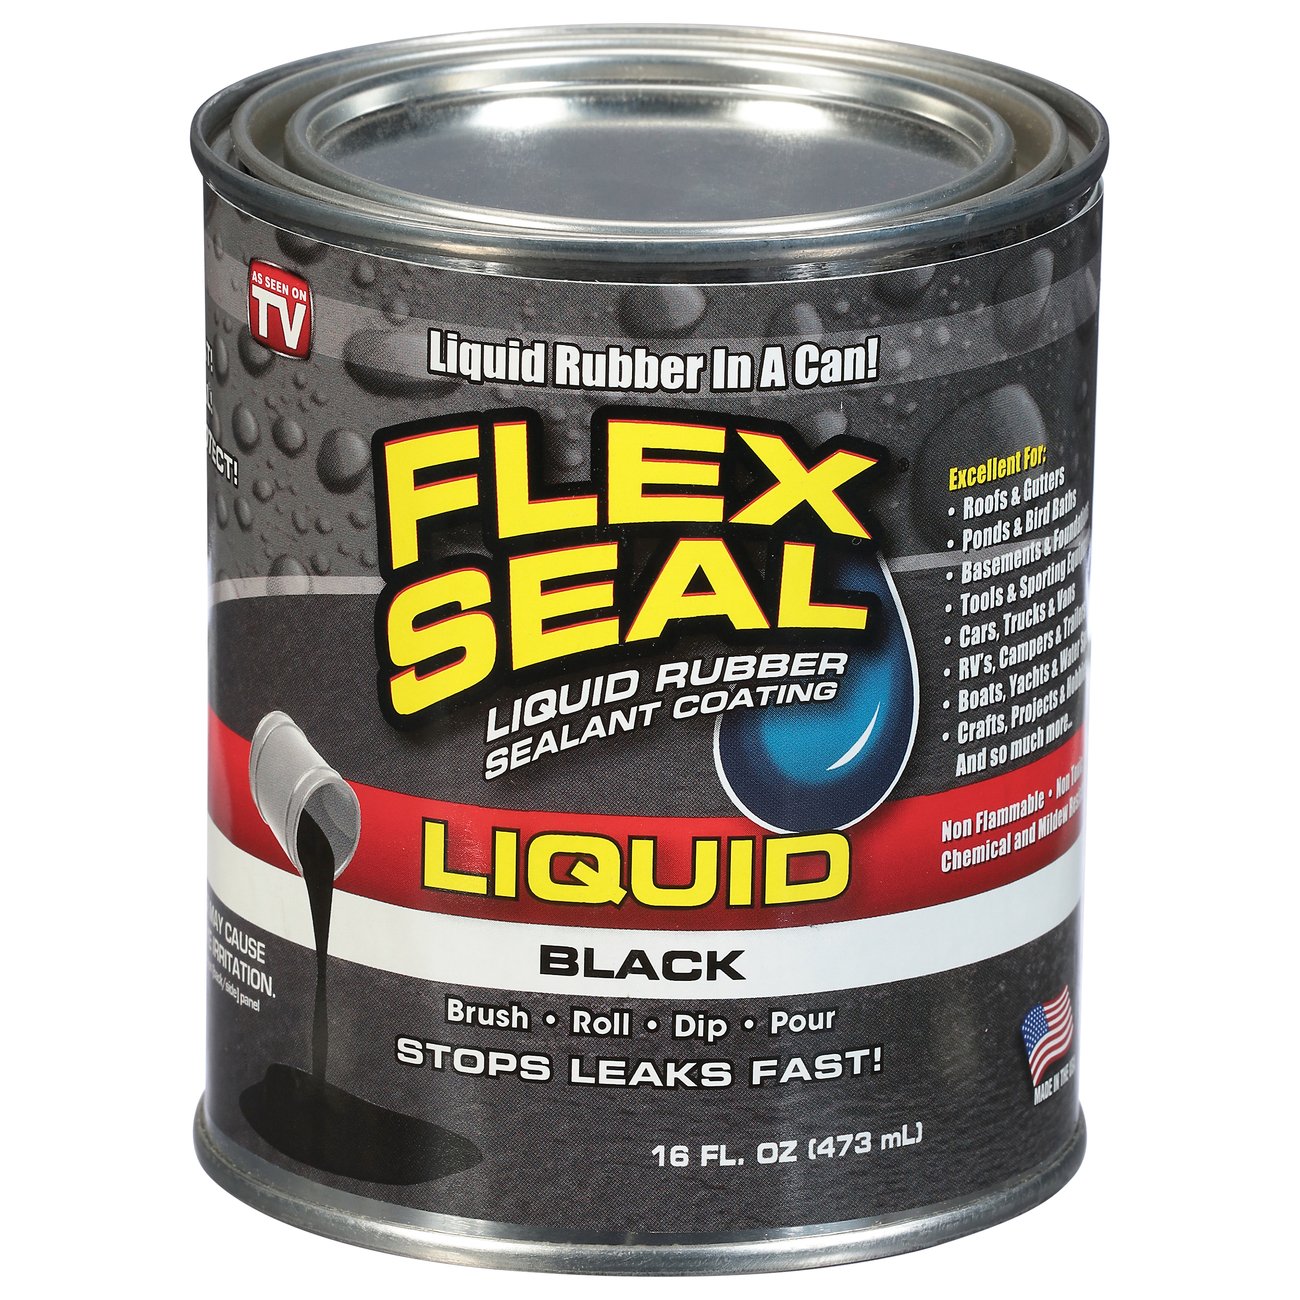 Flex Seal Liquid Rubber Sealant Coating – Black - Shop Adhesives